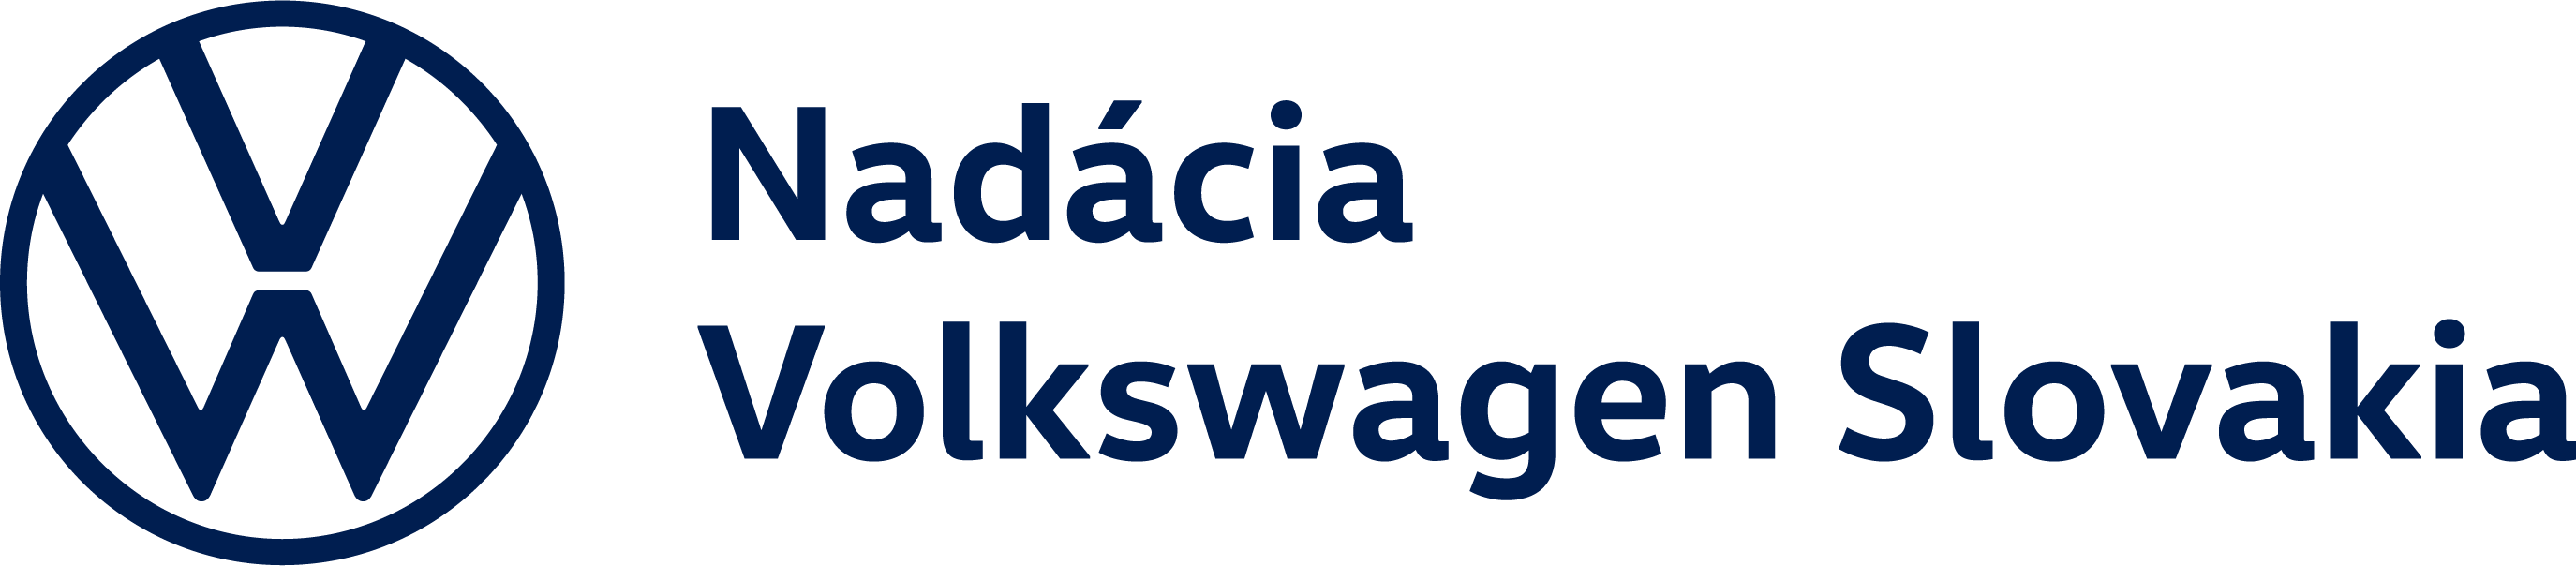 nadacia Volswagen Slovakia